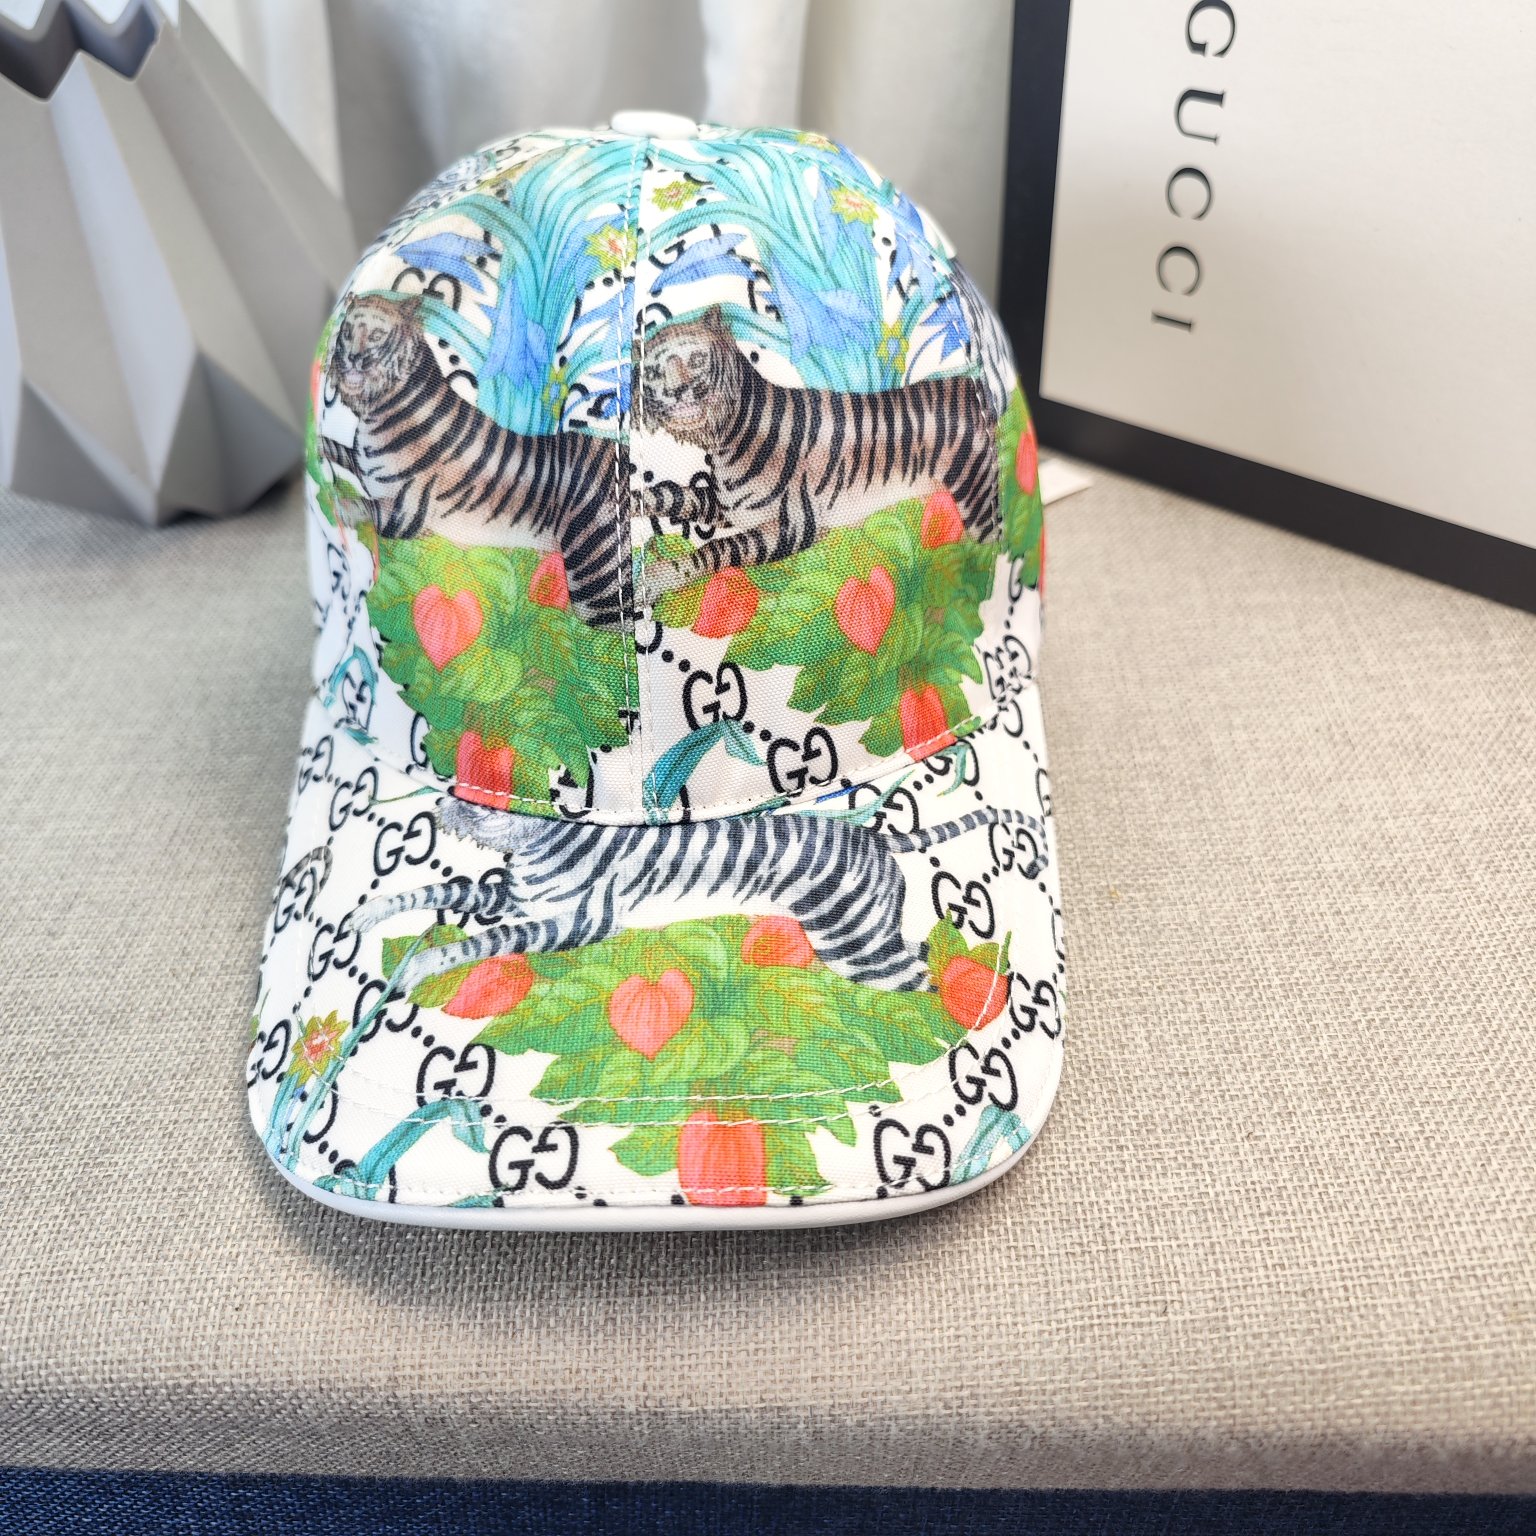 Gucci Hats Baseball Cap Fashion